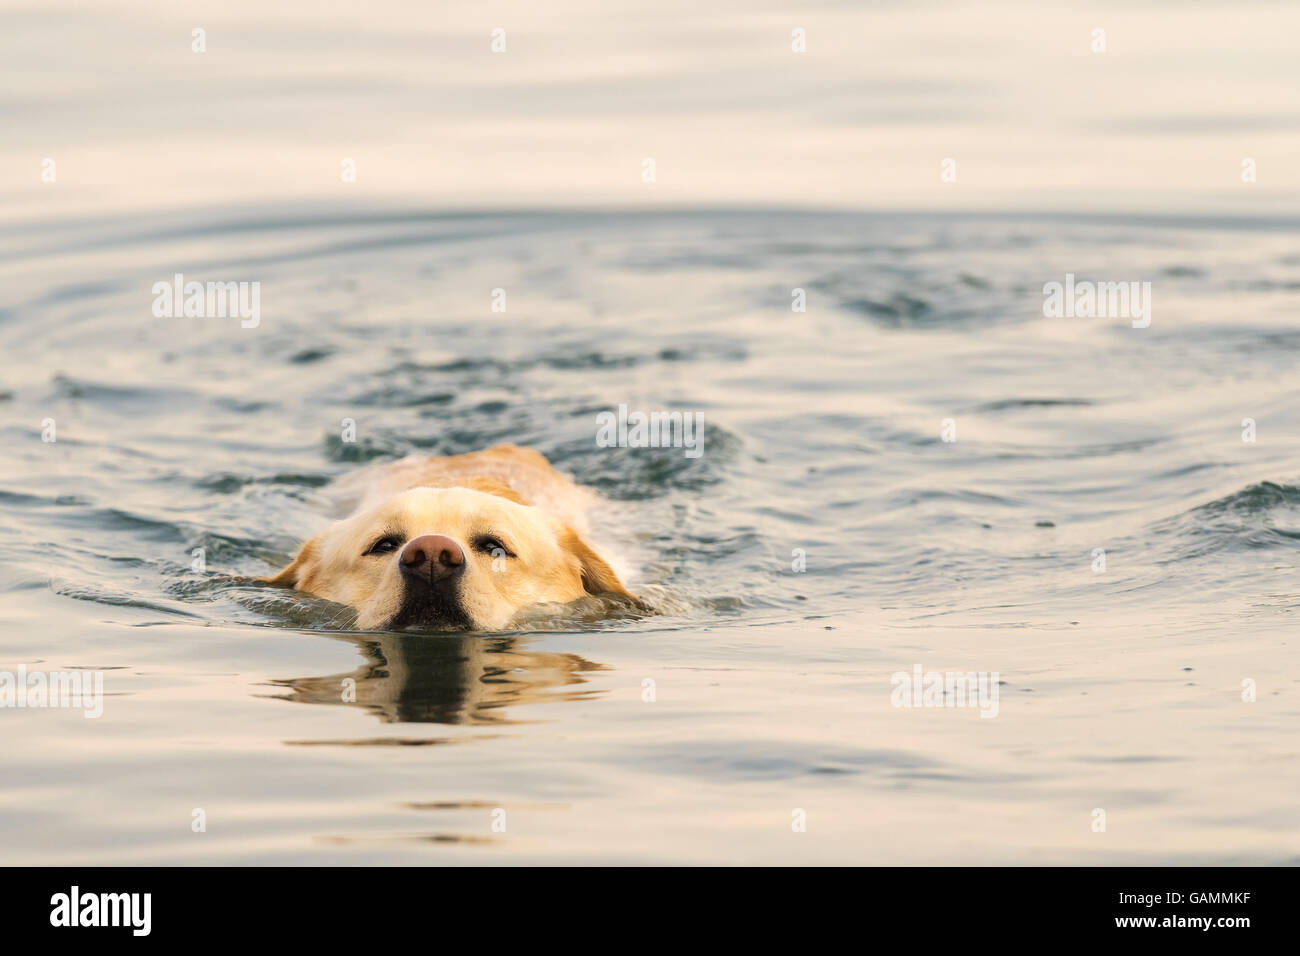 Labrador dog swimming in the sea. Stock Photo